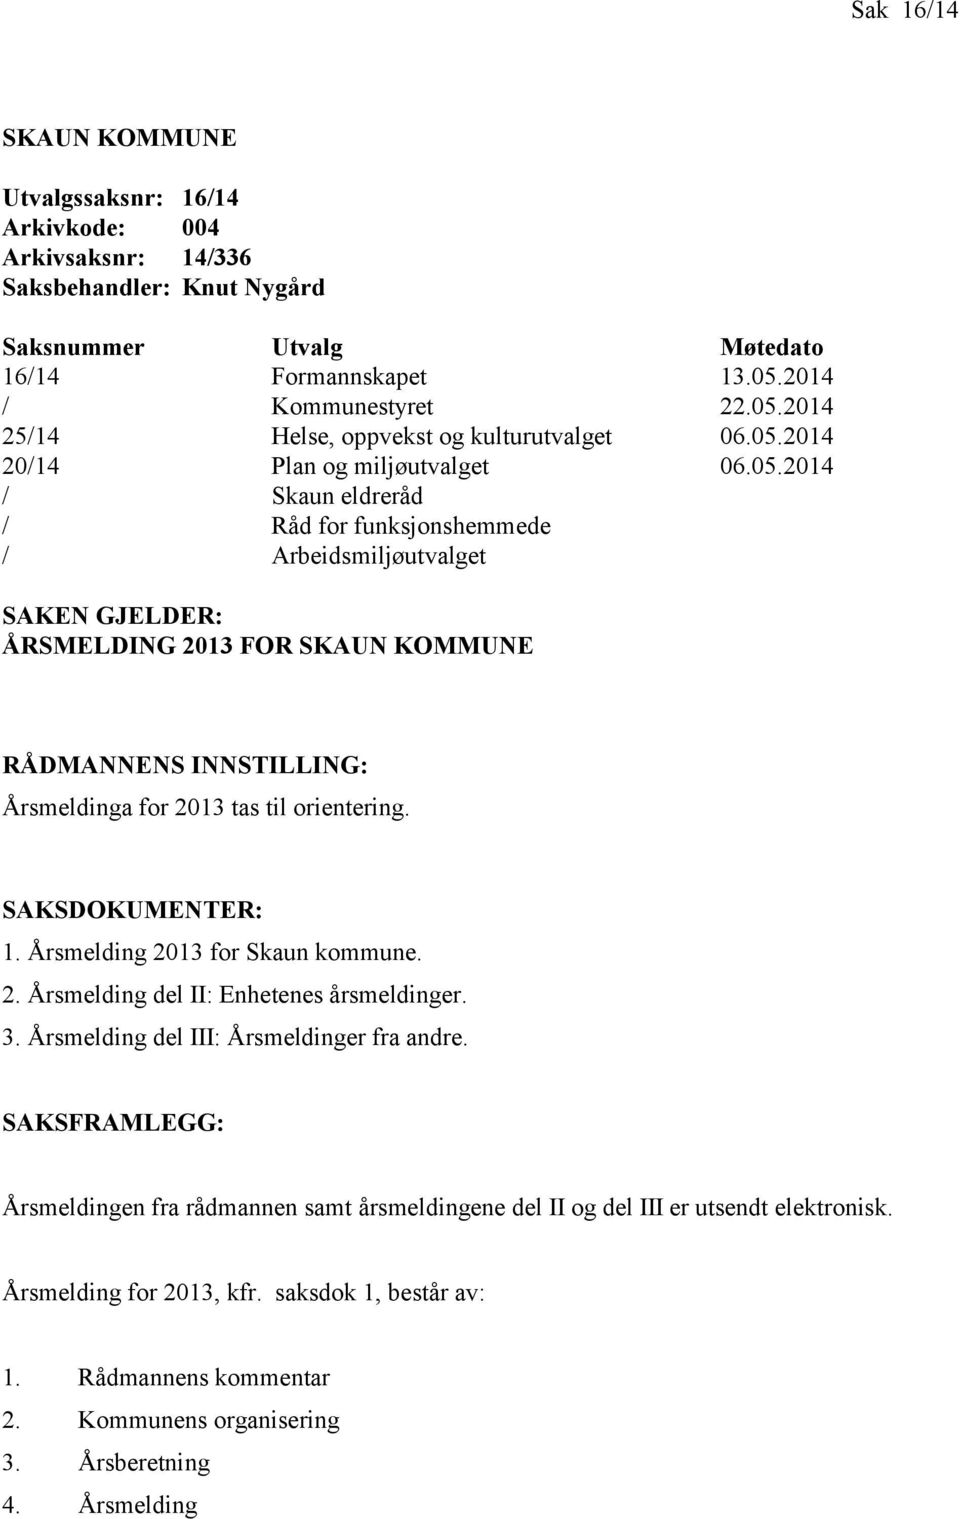 2014 25/14 Helse, oppvekst og kulturutvalget 06.05.